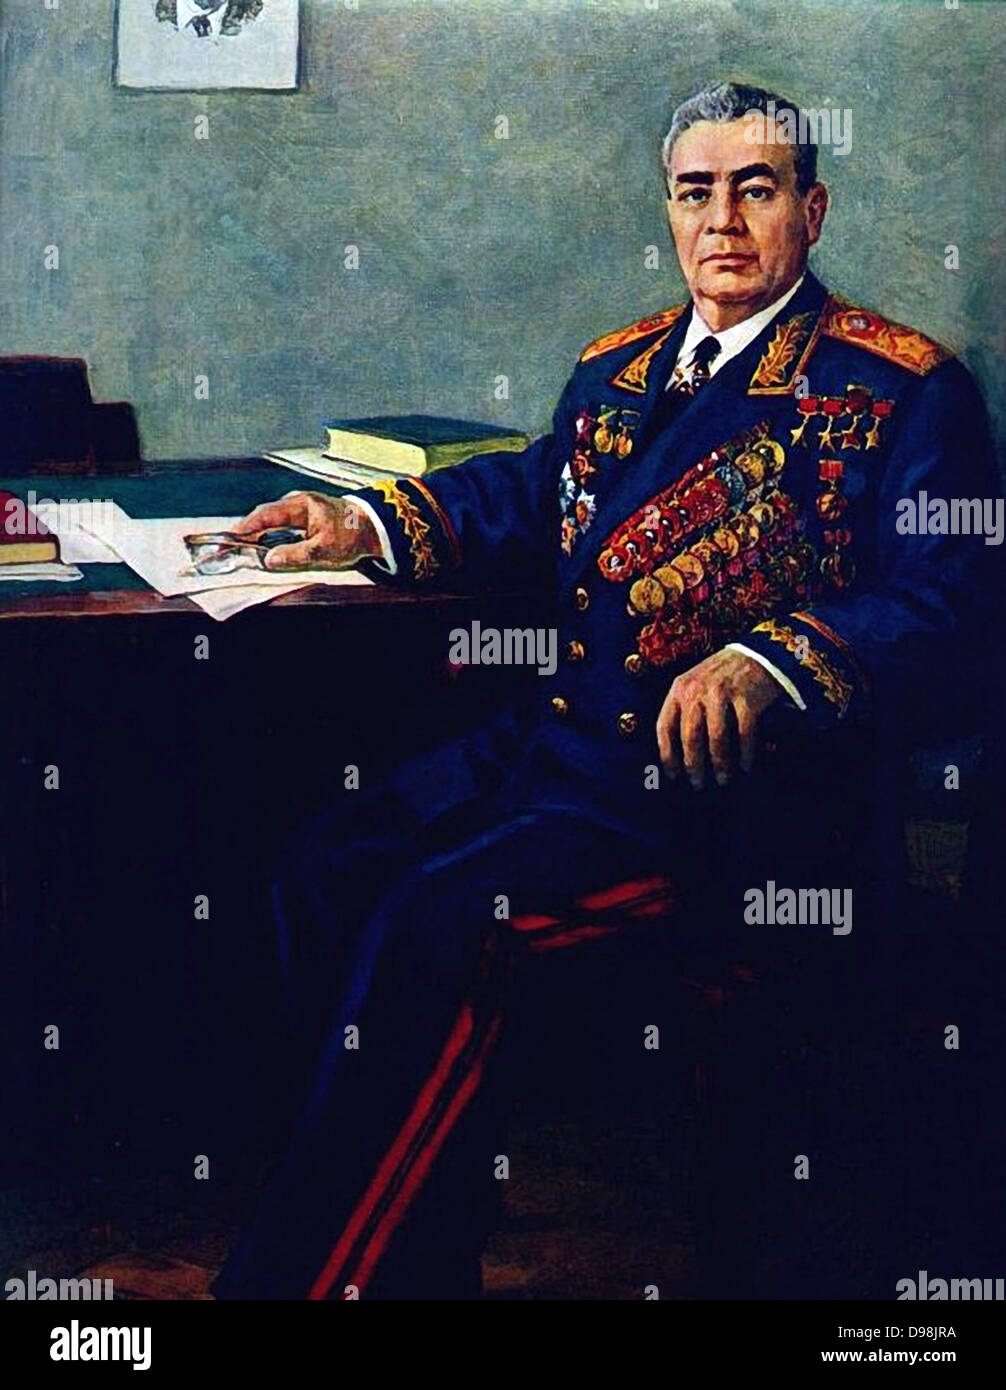 Leonid Iljitsch Breschnew im Jahre 1980. (1906 - 10. November 1982). Sowjetischen Staatsmann in der Zeit des Kalten Krieges. Sowjetische Politiker. Sekretär des Zentralkomitees (ZK) der Kommunistischen Partei der Sowjetunion (Kpdsu), den Vorsitz über das Land von 1964 bis zu seinem Tod 1982. Stockfoto